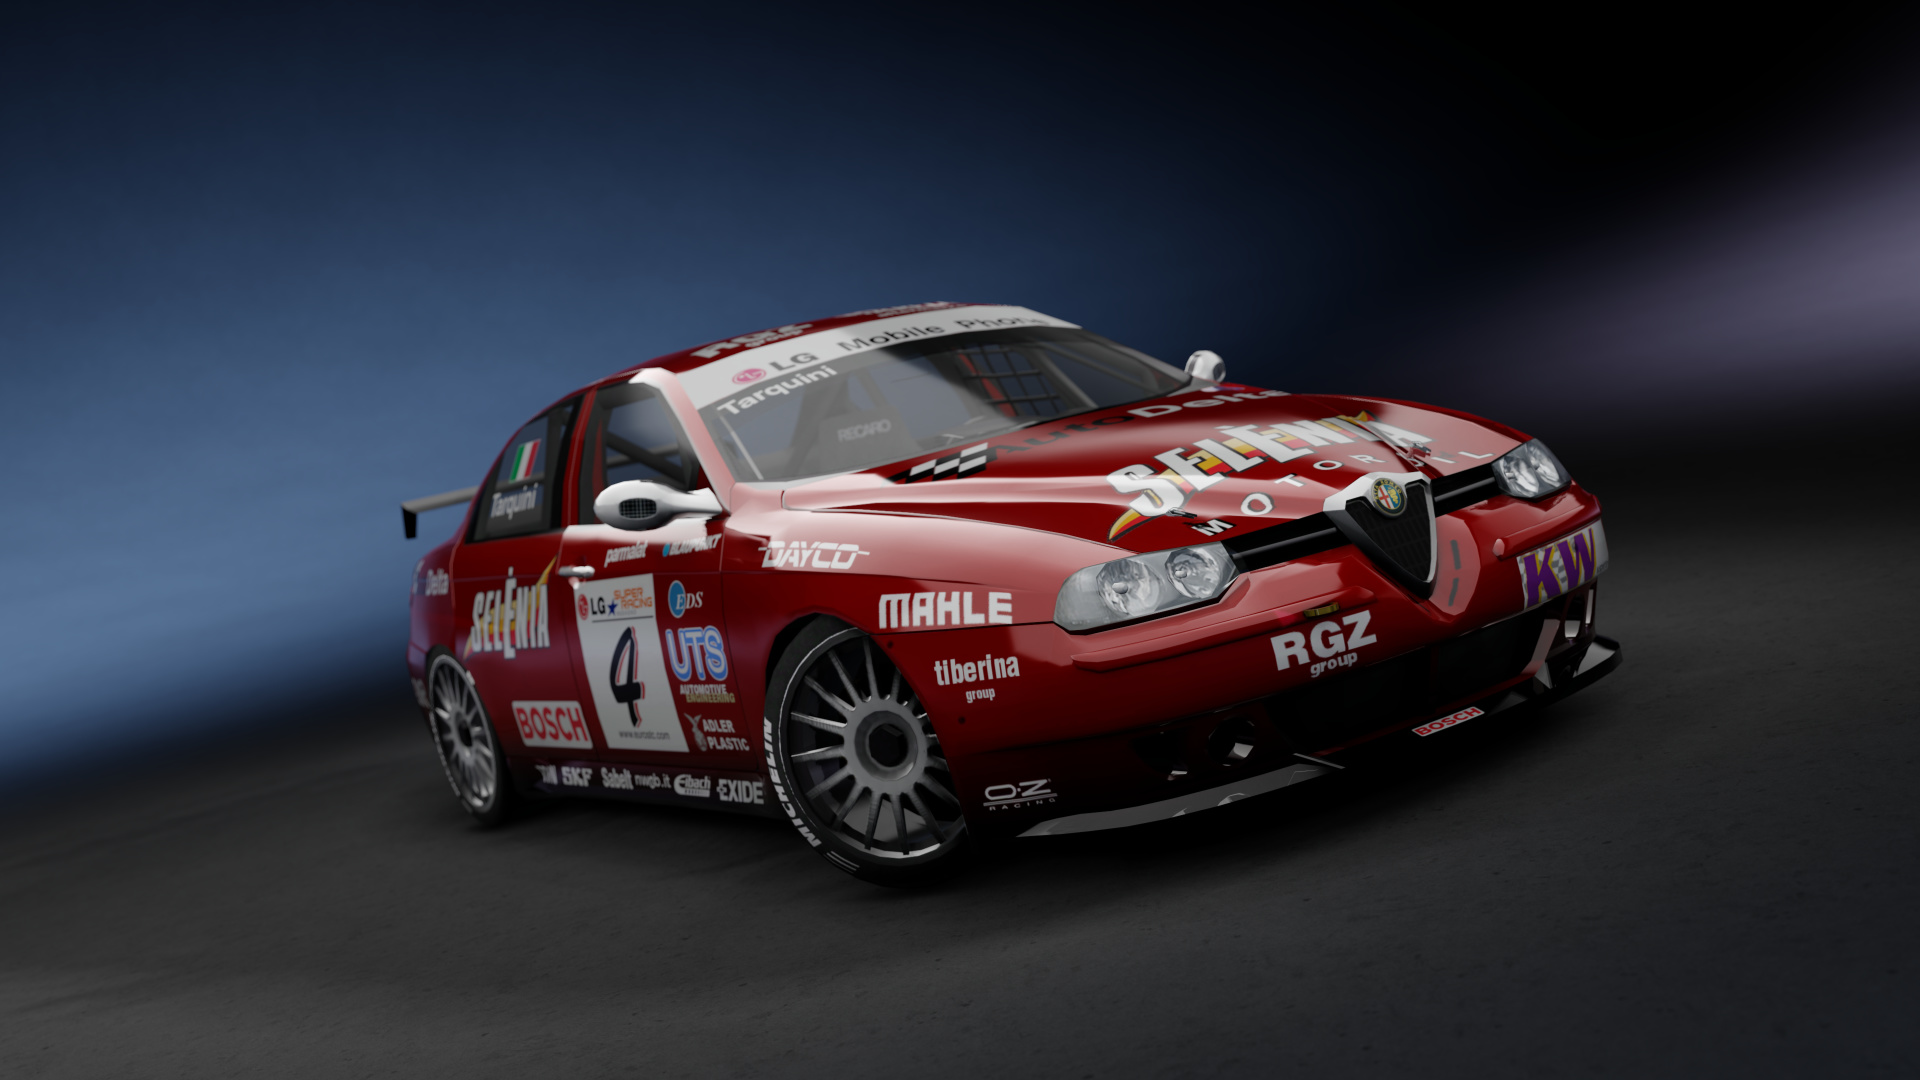 Alfa Romeo 156 Gta Wallpapers